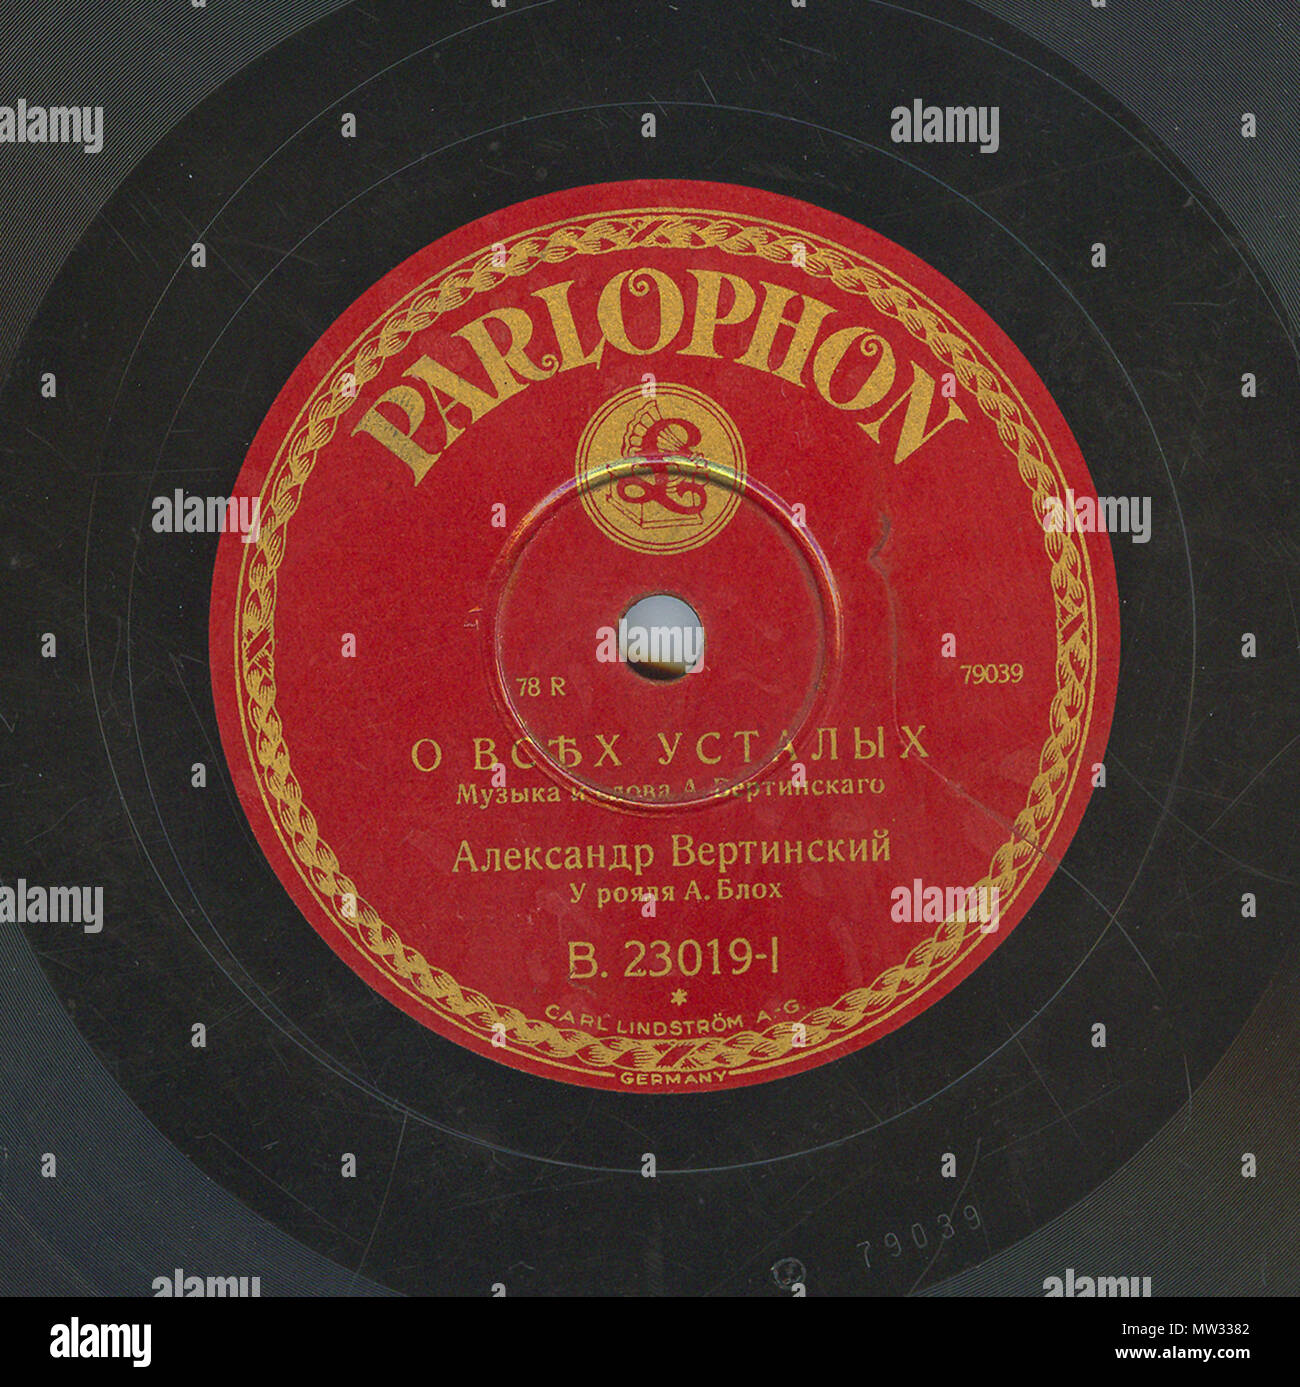 . Englisch: Vertinsky Parlophone B. 23019 01. 6. April 2010, 12:01:23. Parlophone 629 Vertinsky Parlophone B. 23019, 01. Stockfoto